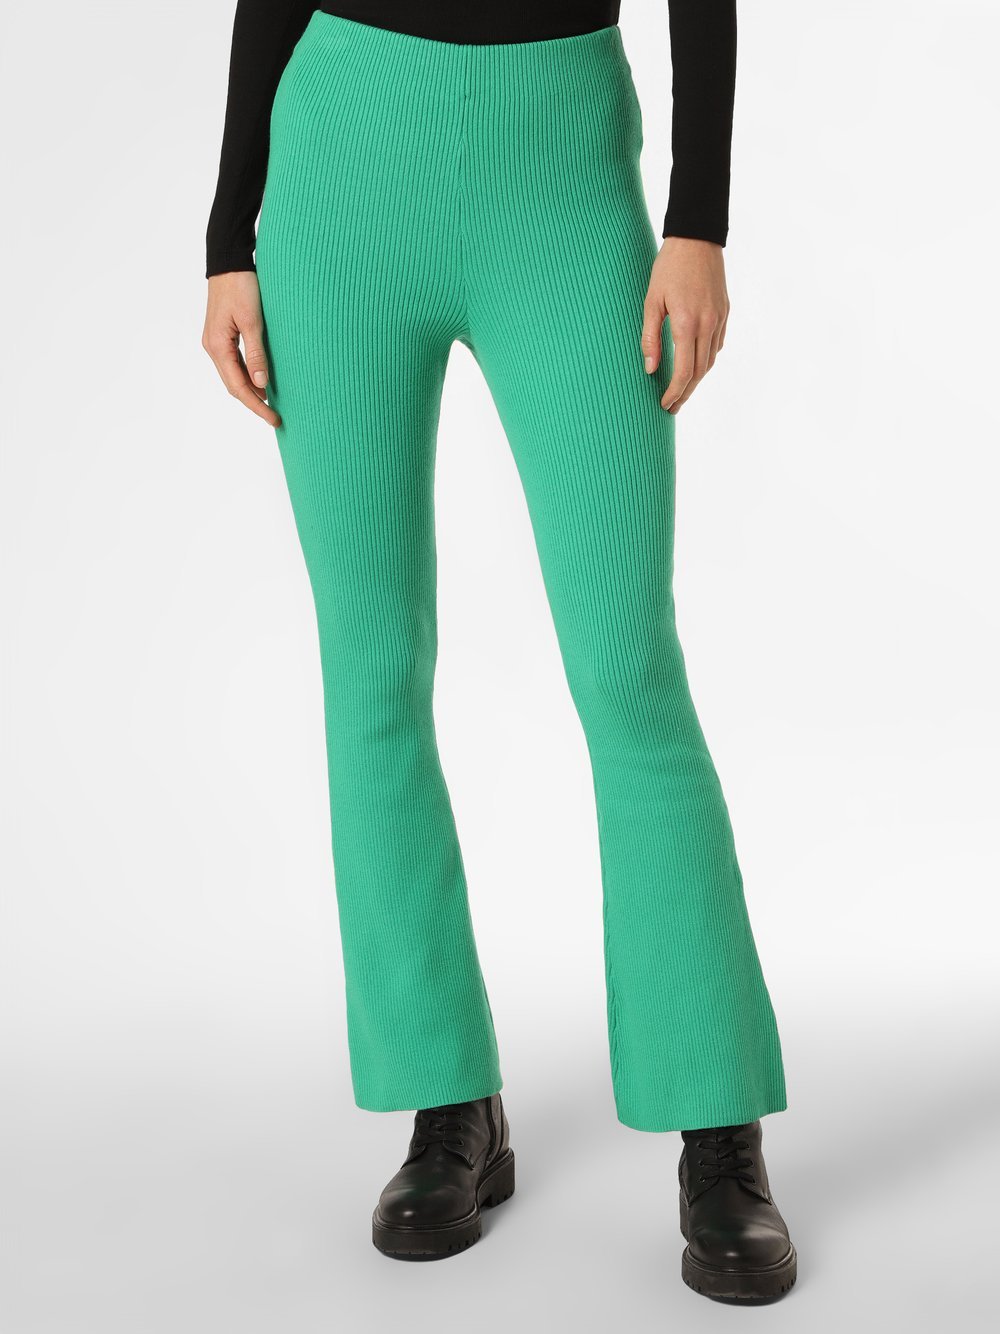 EDITED - Spodnie damskie – Mirja, zielony